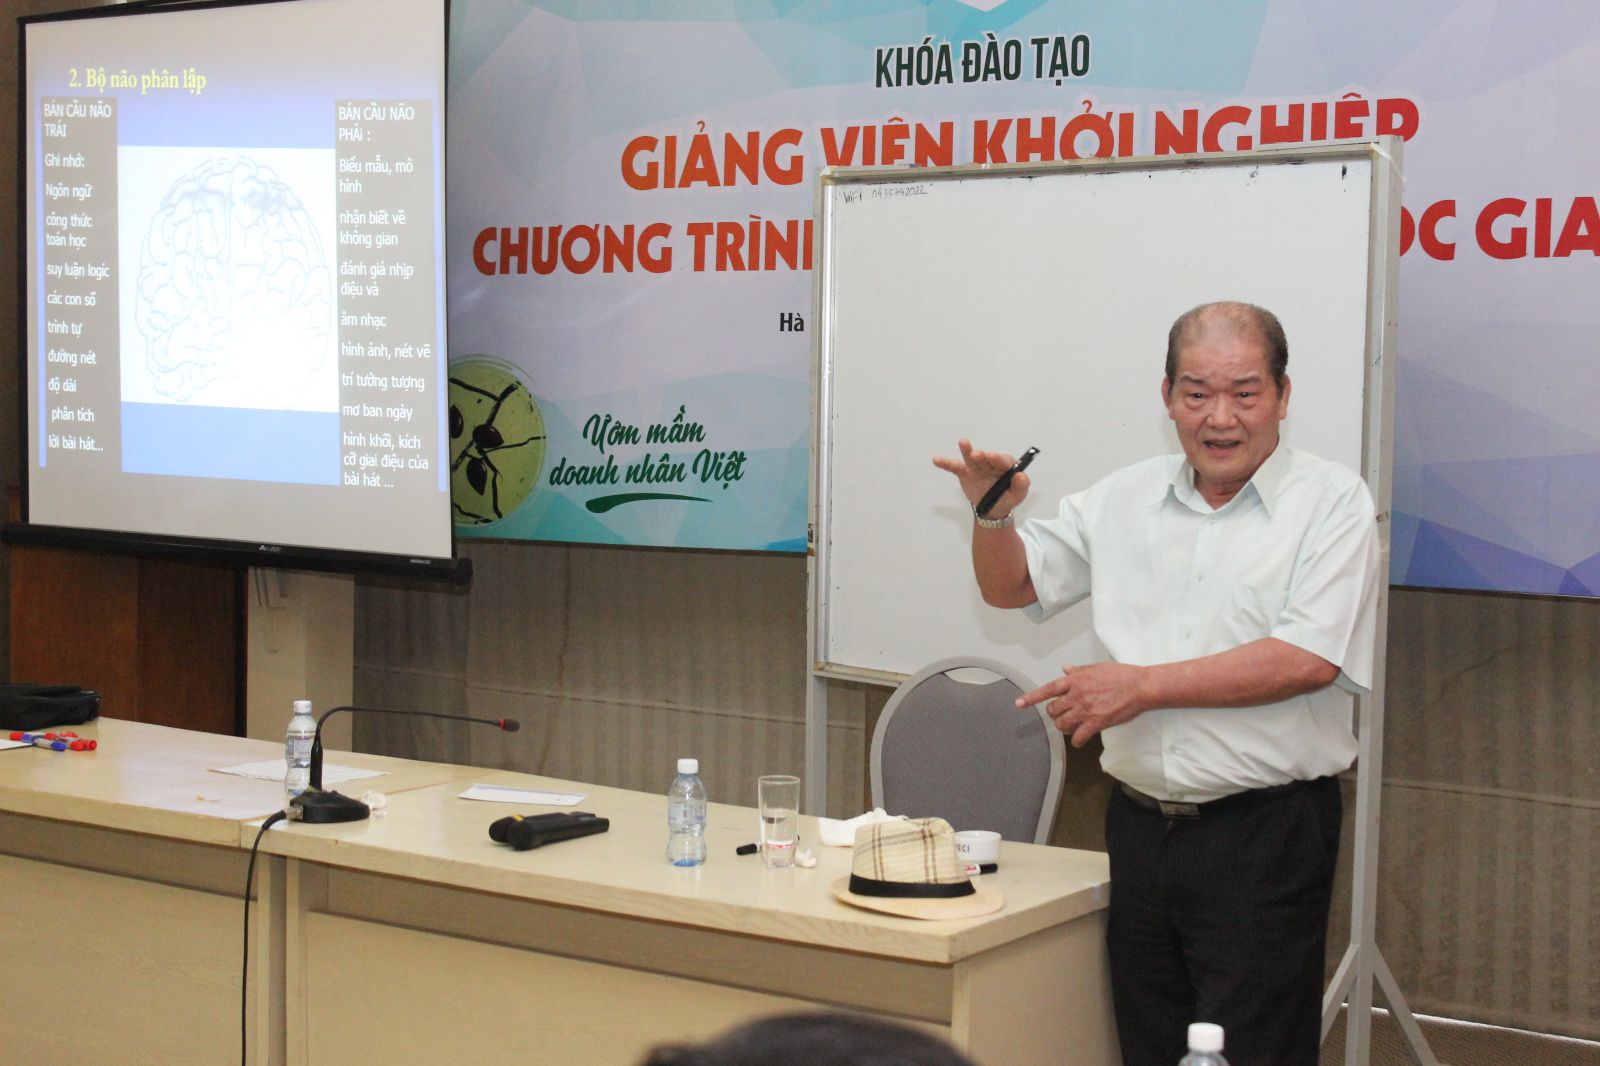 Ông Nguyễn Văn Mỹ - Giảng viên cao cấp CEFE, cố vấn Chương trình Khởi nghiệp, giảng viên chínhp/khóa đào tạo